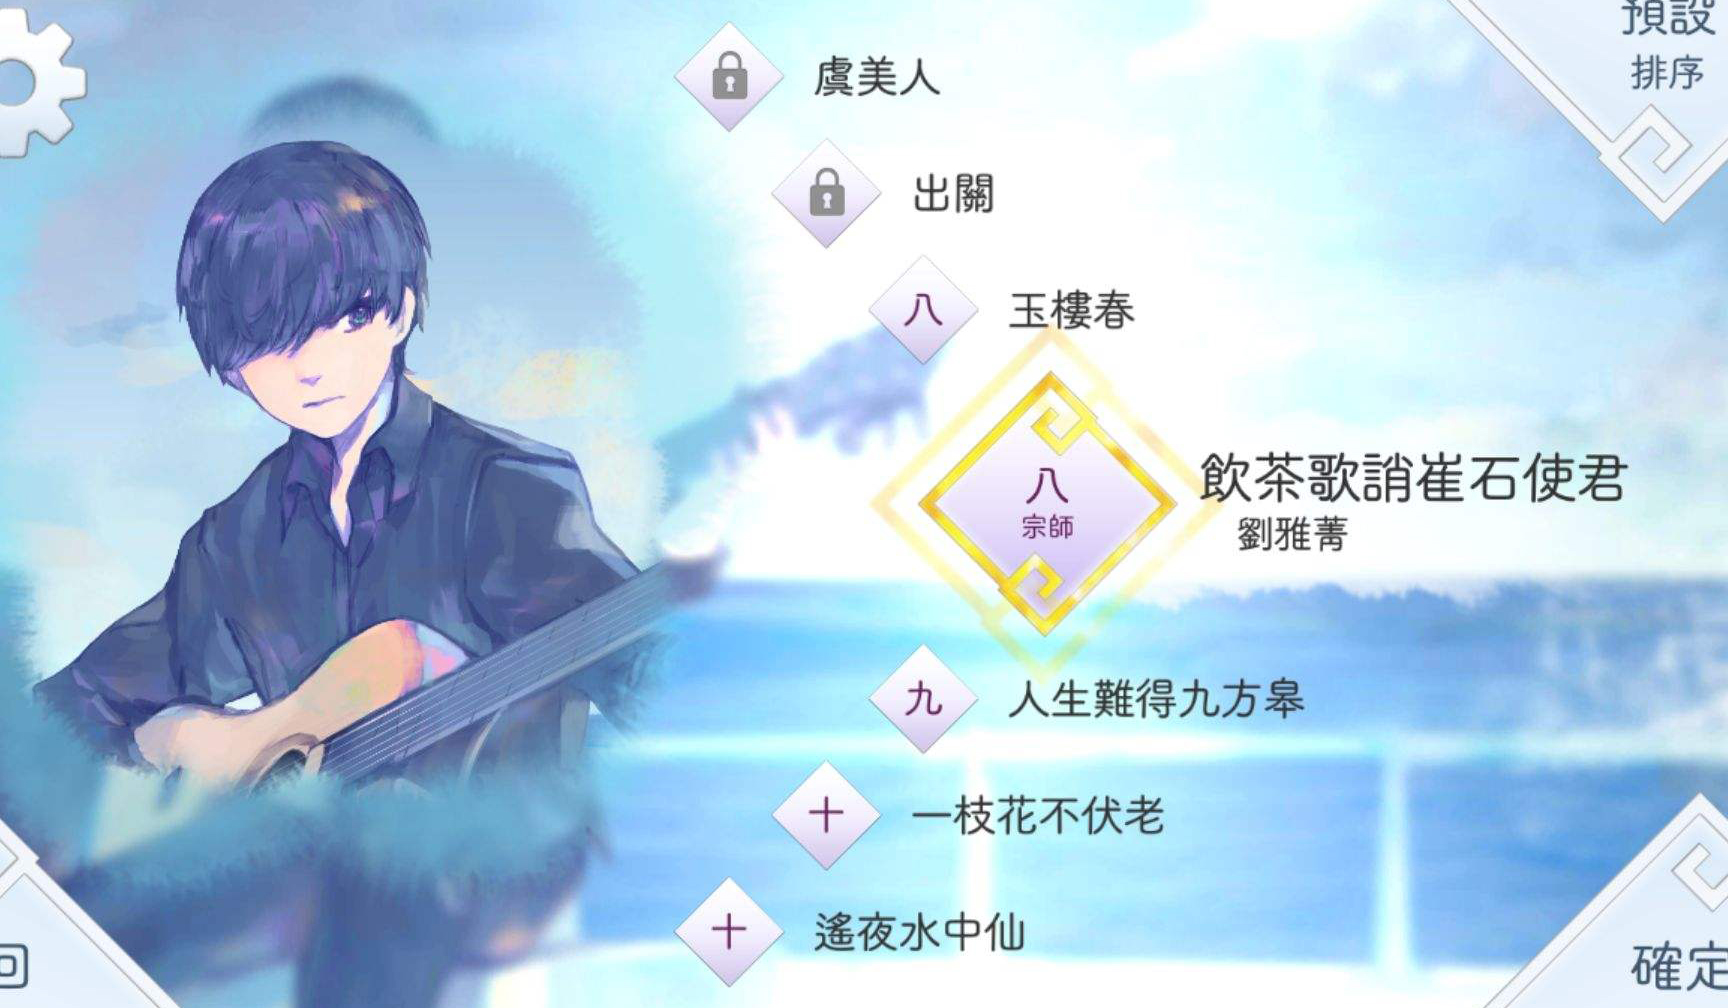 Fami通最新一期游戏评分：中国音游《阳春白雪》获30分